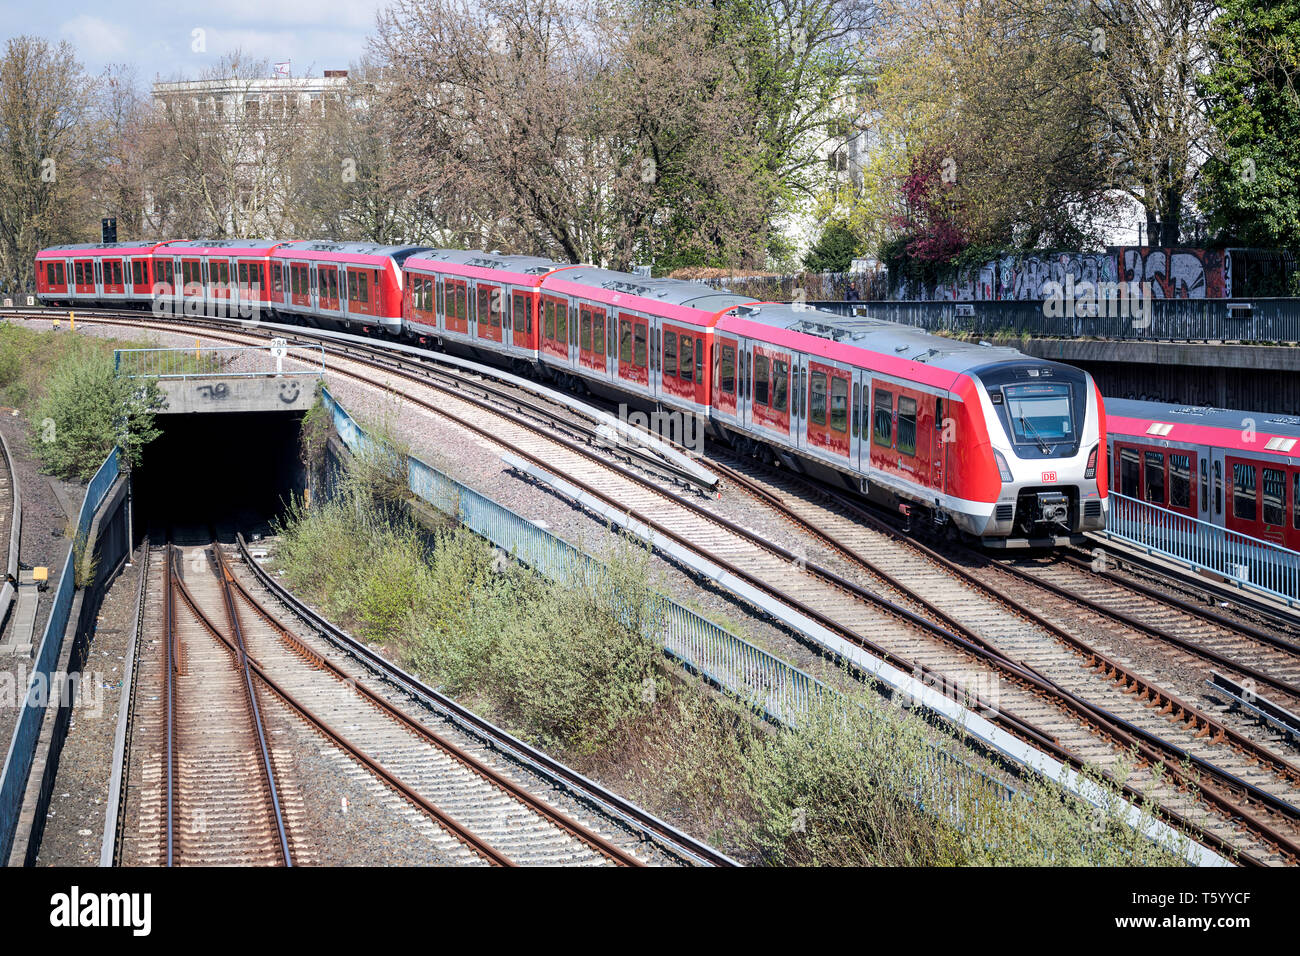 490 clase del tren S-Bahn de Hamburgo, rapid Mass Transit Railway en red en la región metropolitana de Hamburgo. Foto de stock